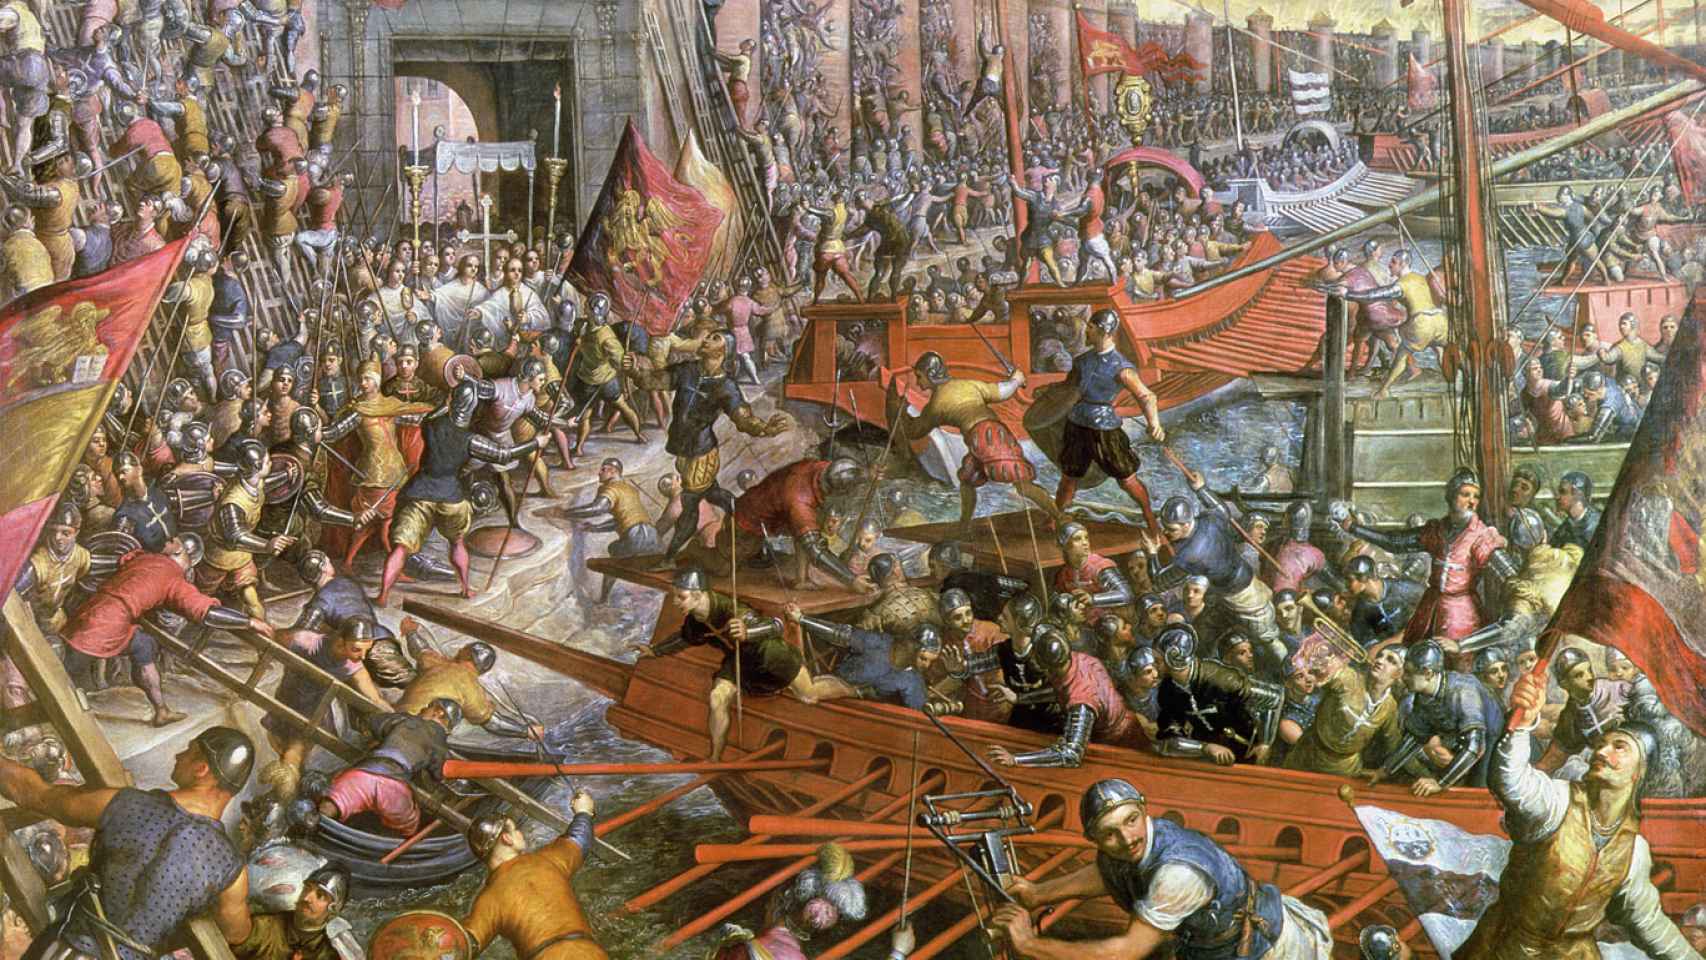 La toma de Constantinopla en 1204, según el pincel de Tintoretto.